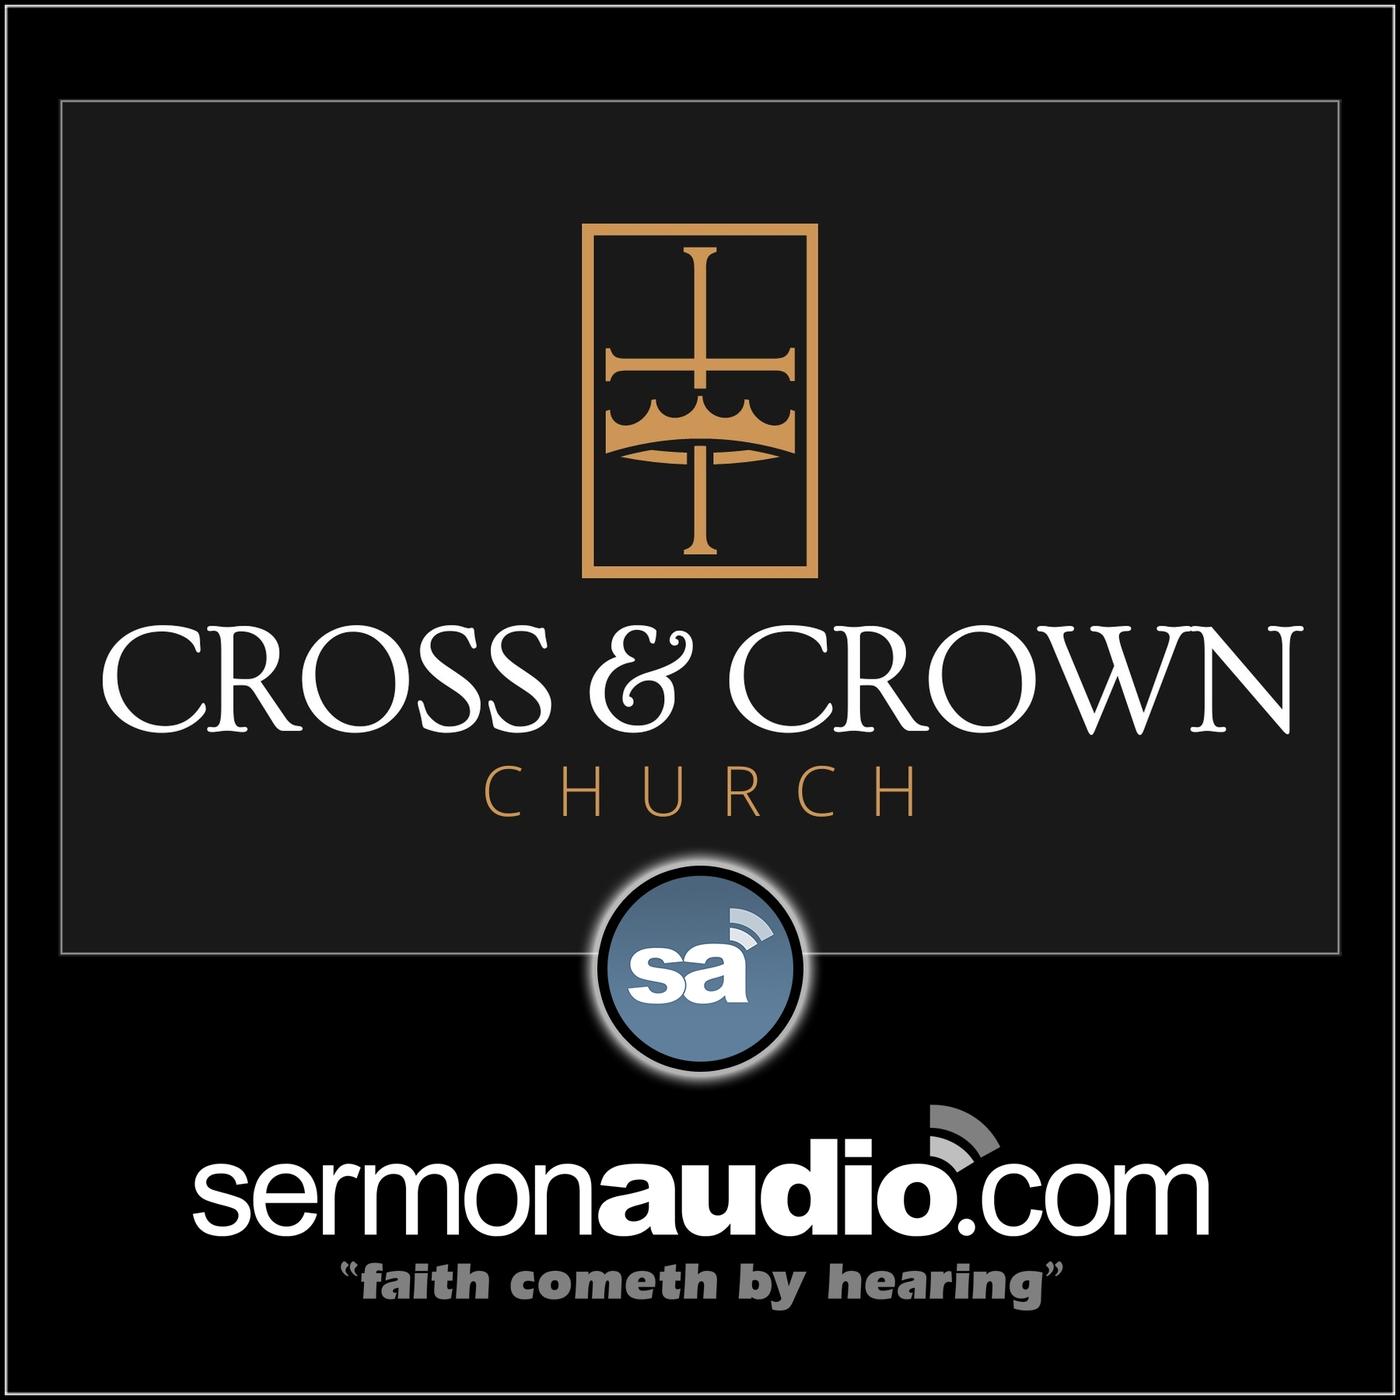 Cross & Crown Church